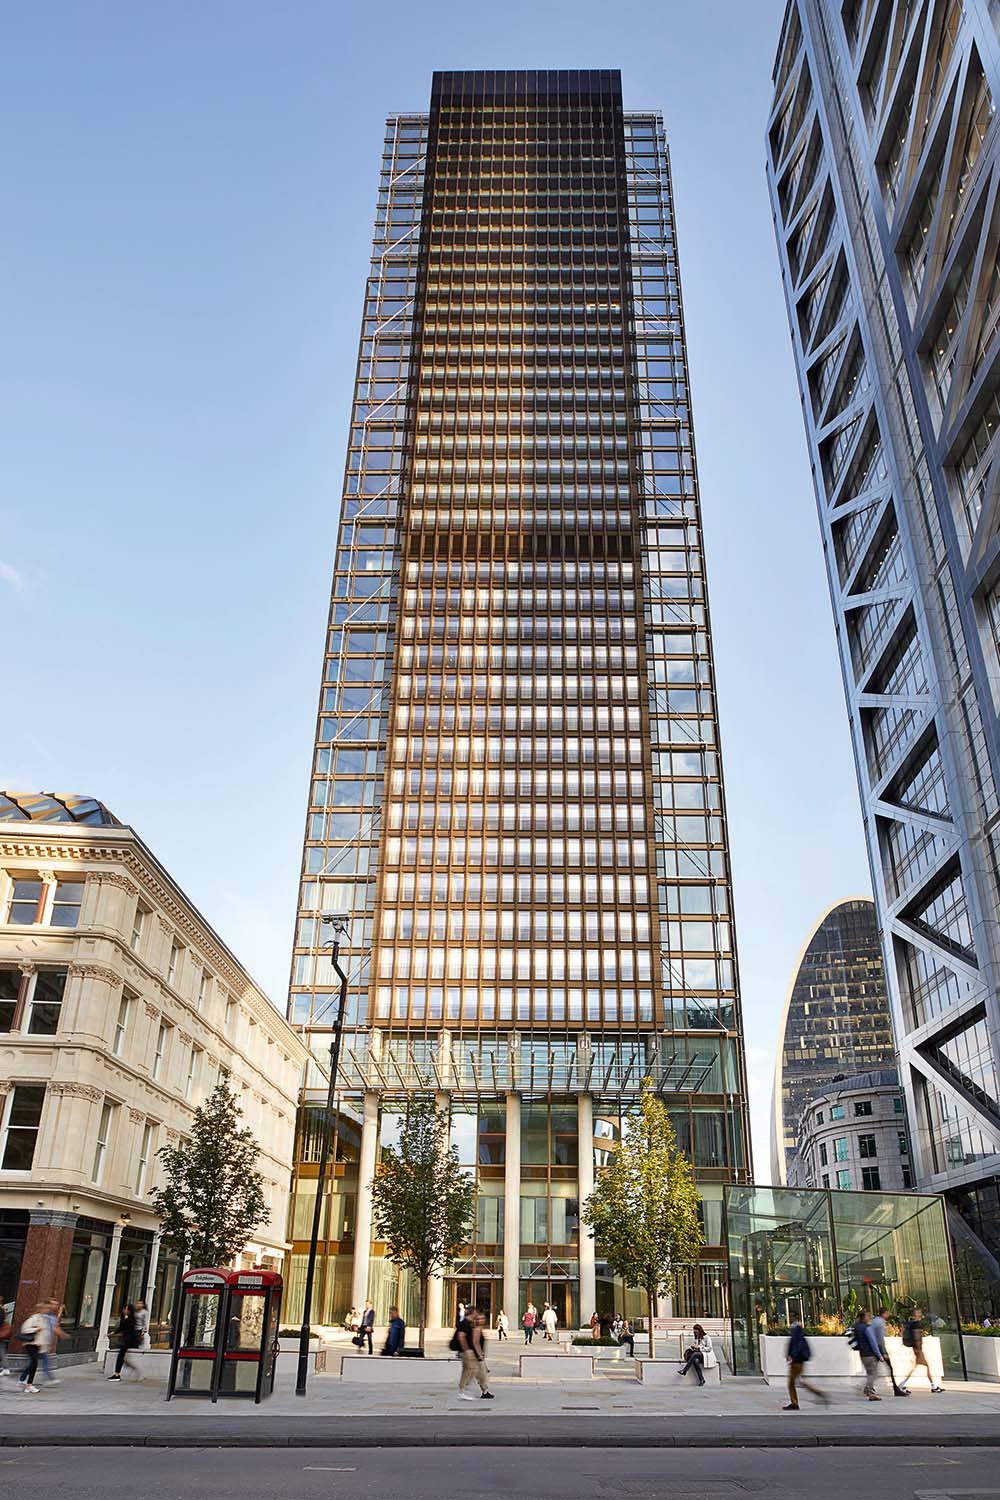 Sieht wie ein Büroturm aus, ist aber keiner: Unten eröffnet Europas erstes »Pan Pacific Hotel«, ab dem 21. Stockwerk luxuriöse Sky Residences. Die 43-stöckige »One Bishopsgate Plaza« bringt das ­Wohnen zurück in die Londoner City.
onebgp.com